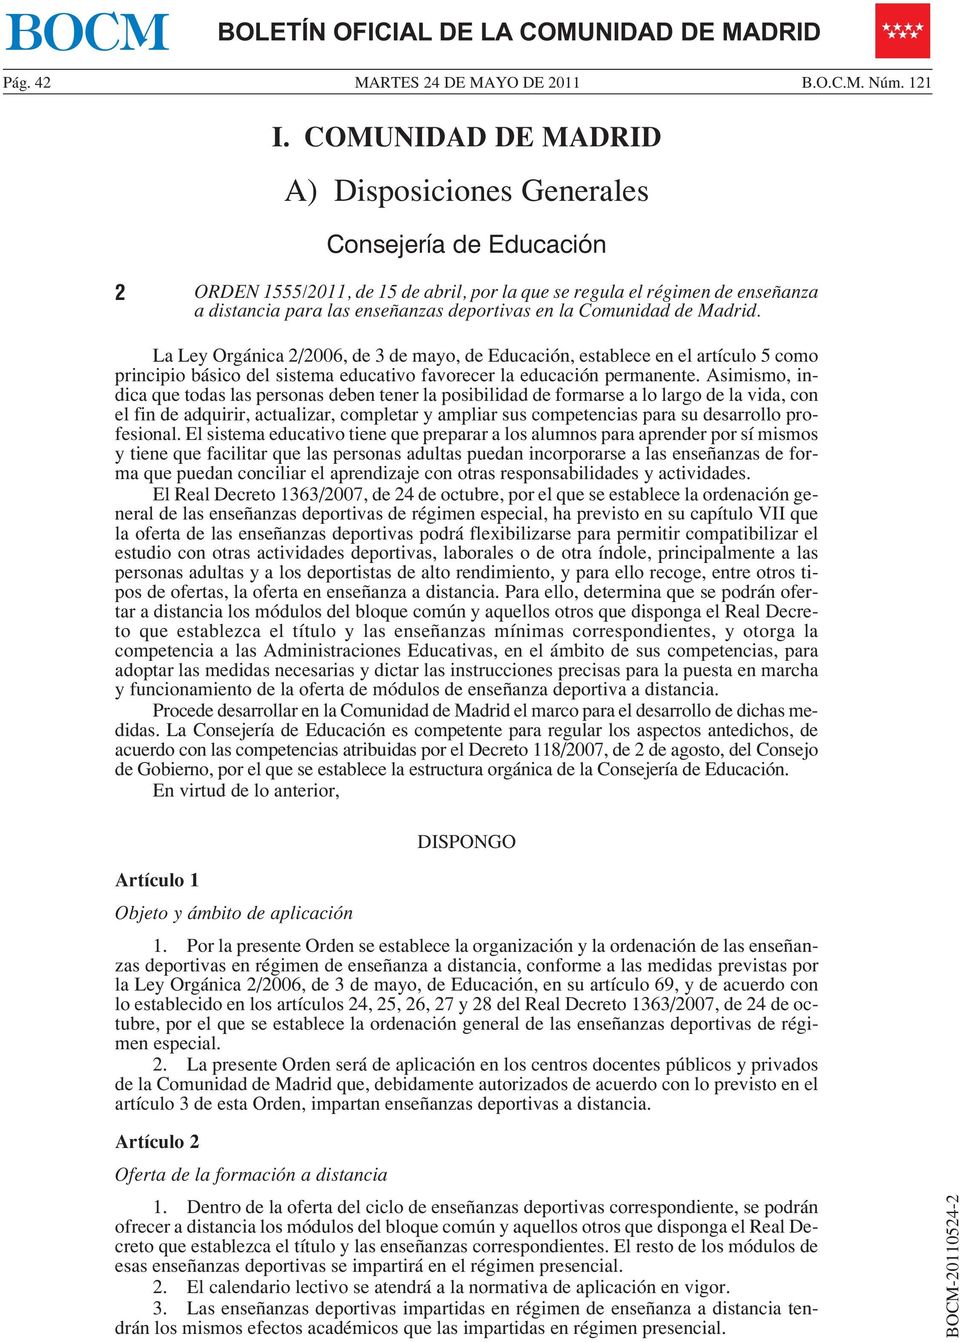 Comunidad de Madrid. La Ley Orgánica 2/2006, de 3 de mayo, de Educación, establece en el artículo 5 como principio básico del sistema educativo favorecer la educación permanente.